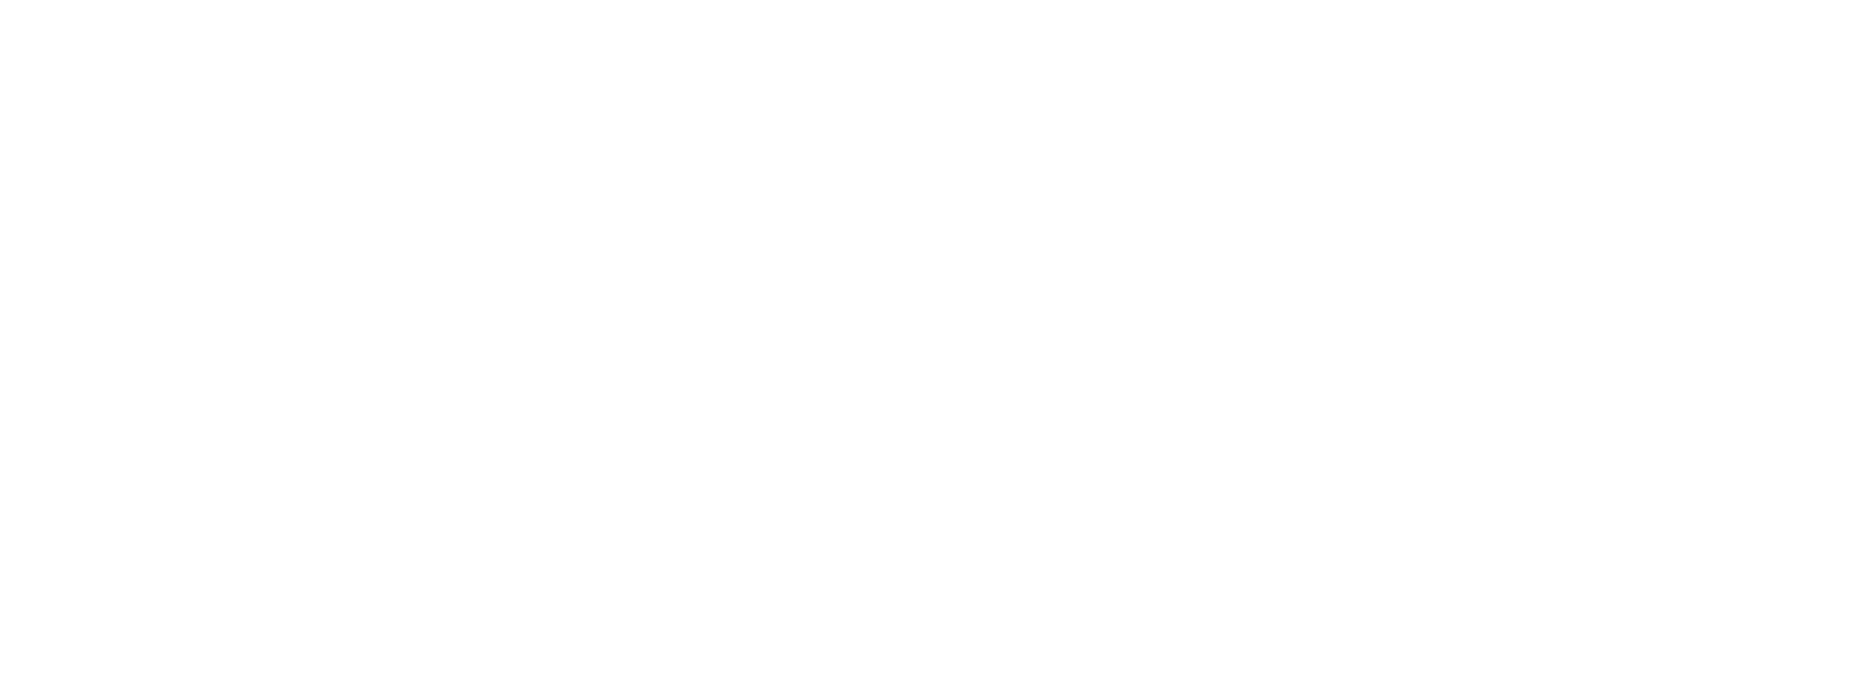 BASF logo large for dark backgrounds (transparent PNG)